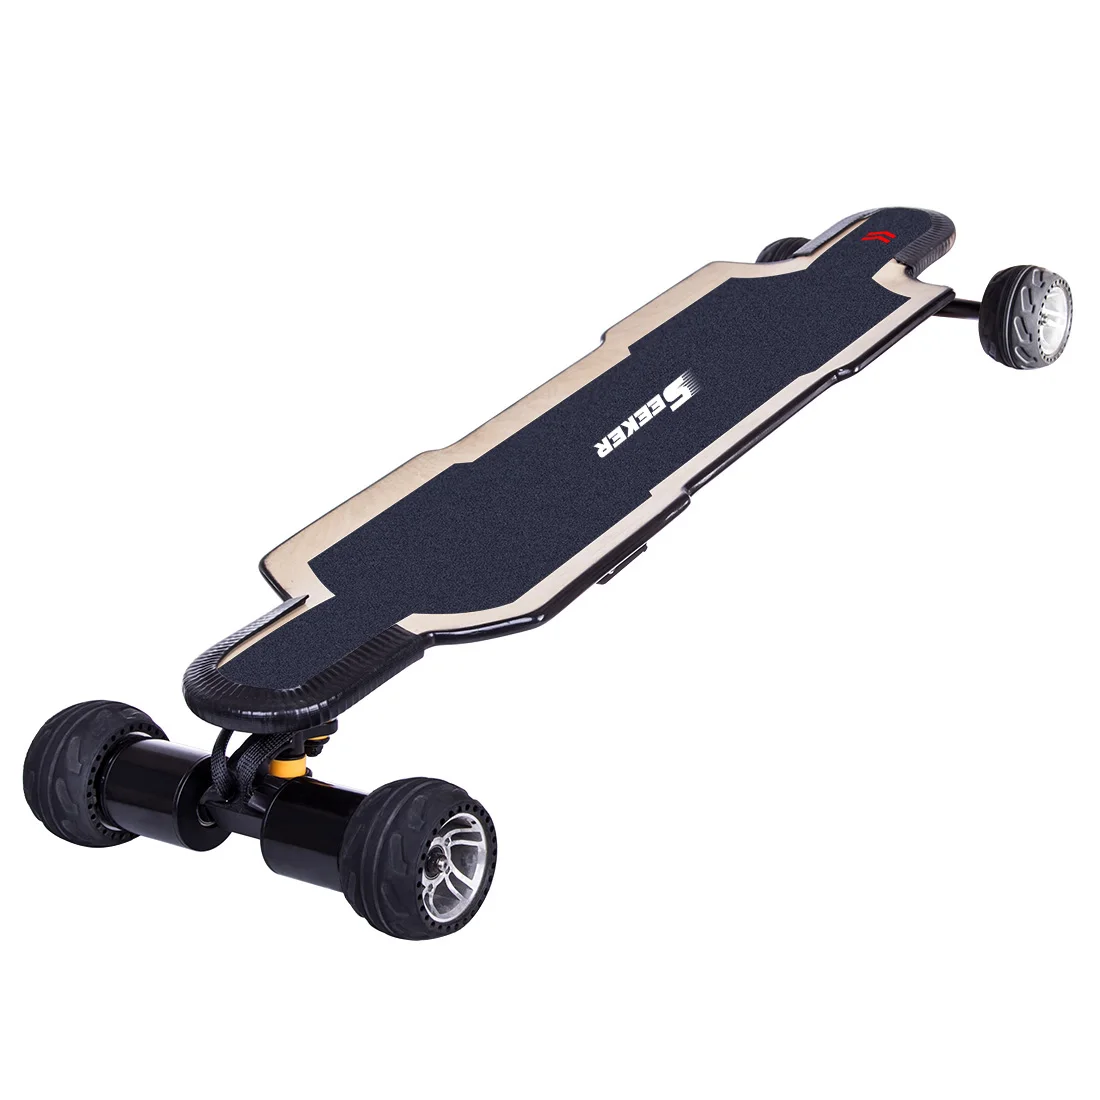 Просителей BRT-02 4-х колесный Электрический скейтборд Спорт Развлечения для подростков и взрослых-штепсельная вилка австралийского стандарта